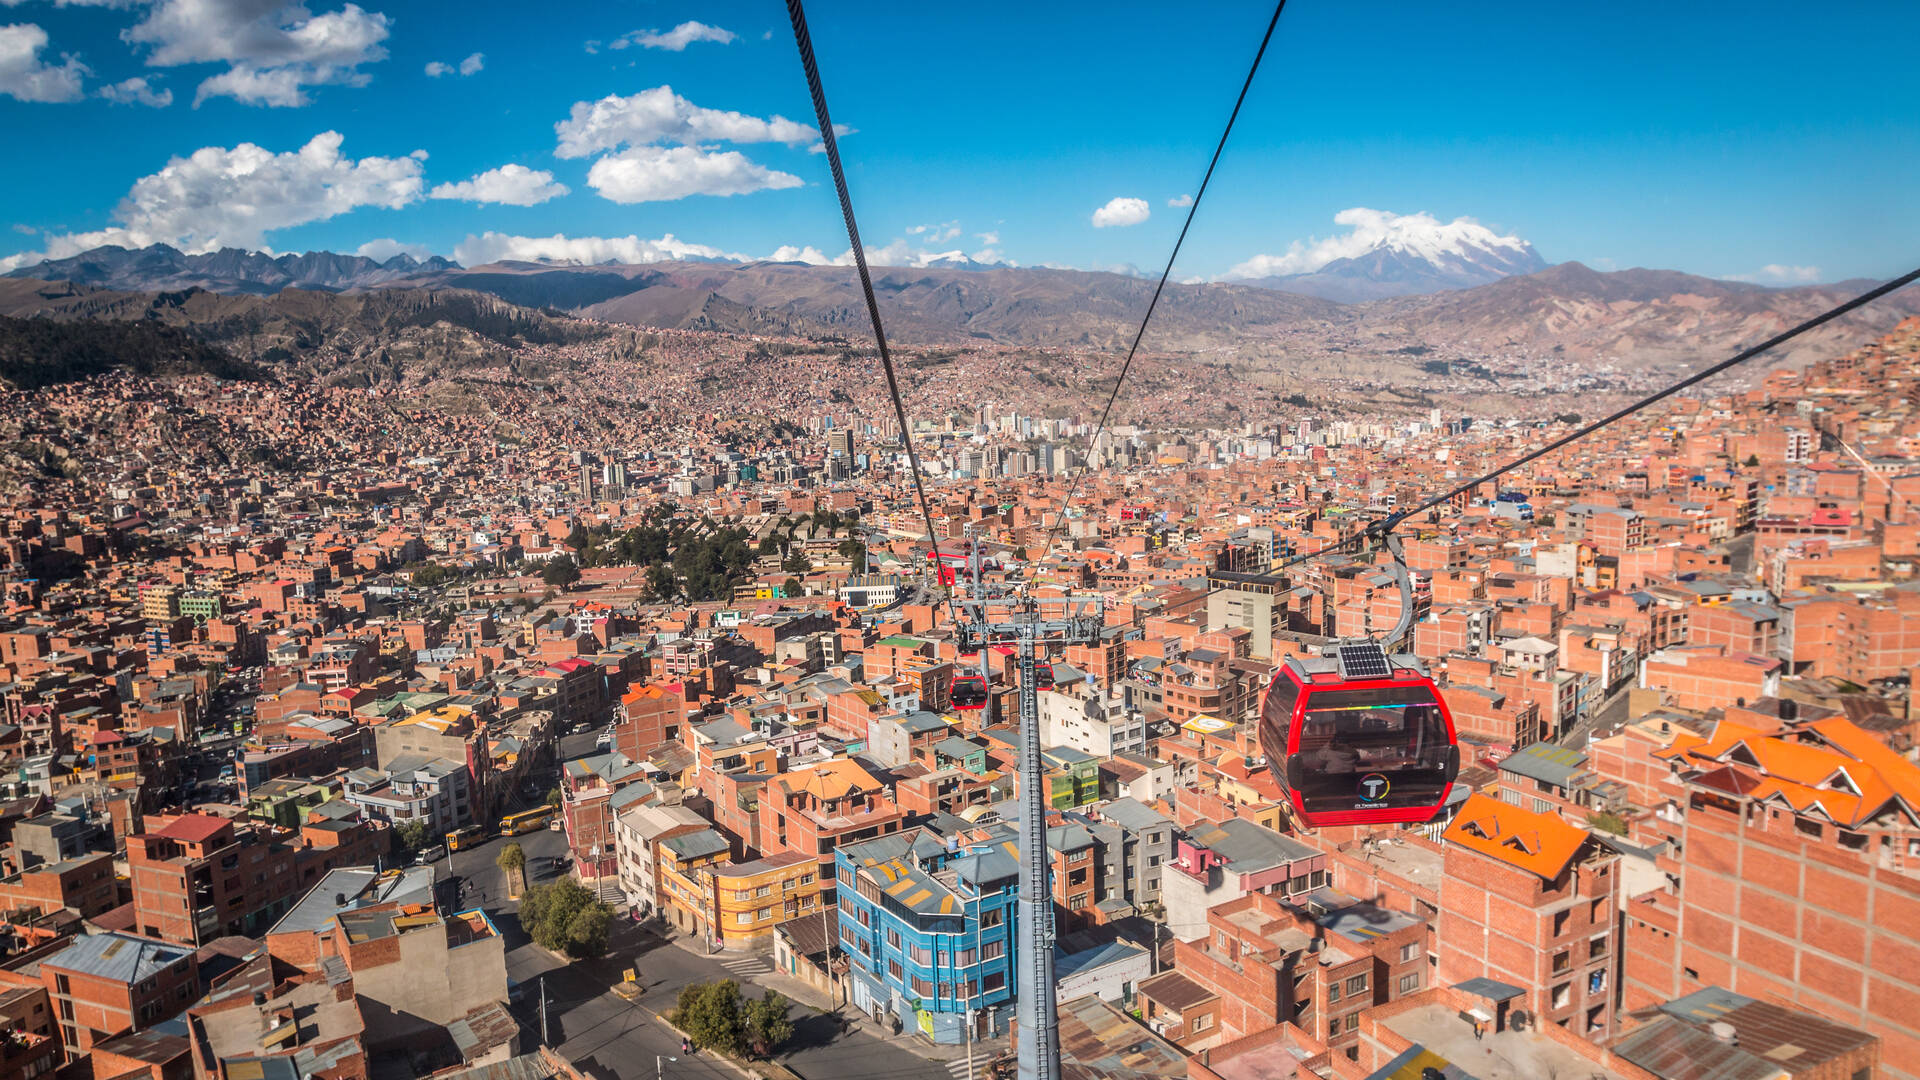 La Paz Reisen und Billigflug - Bolivien - Hotels und Flug nach La Paz